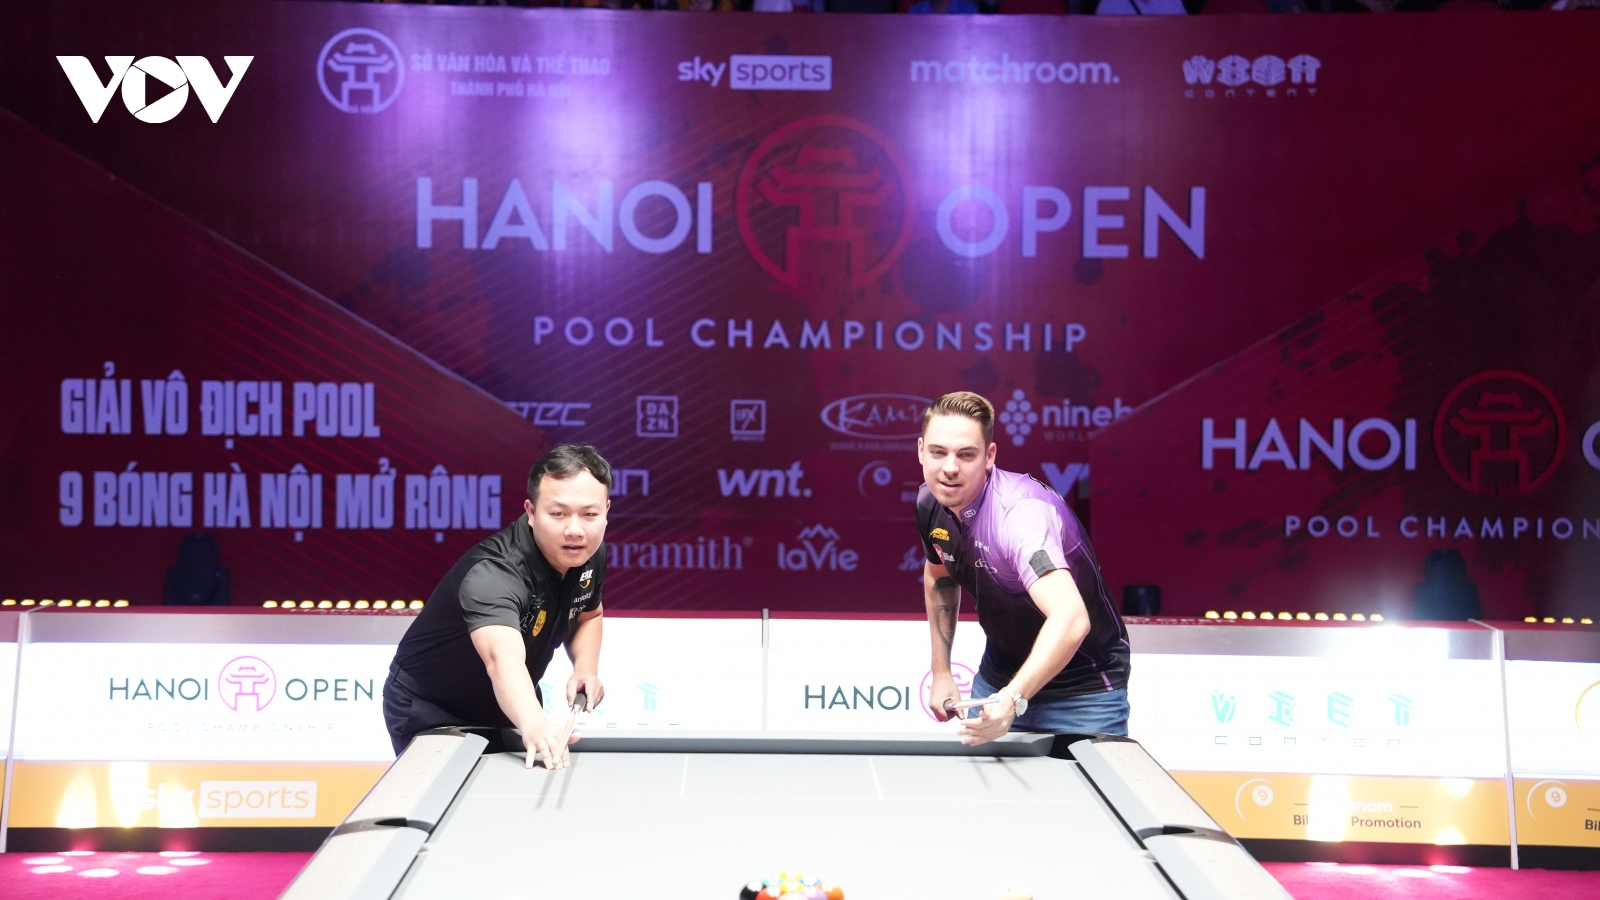 Hanoi Open Pool Championship 2023: Giải đấu trong mơ lần đầu tổ chức tại Hà Nội